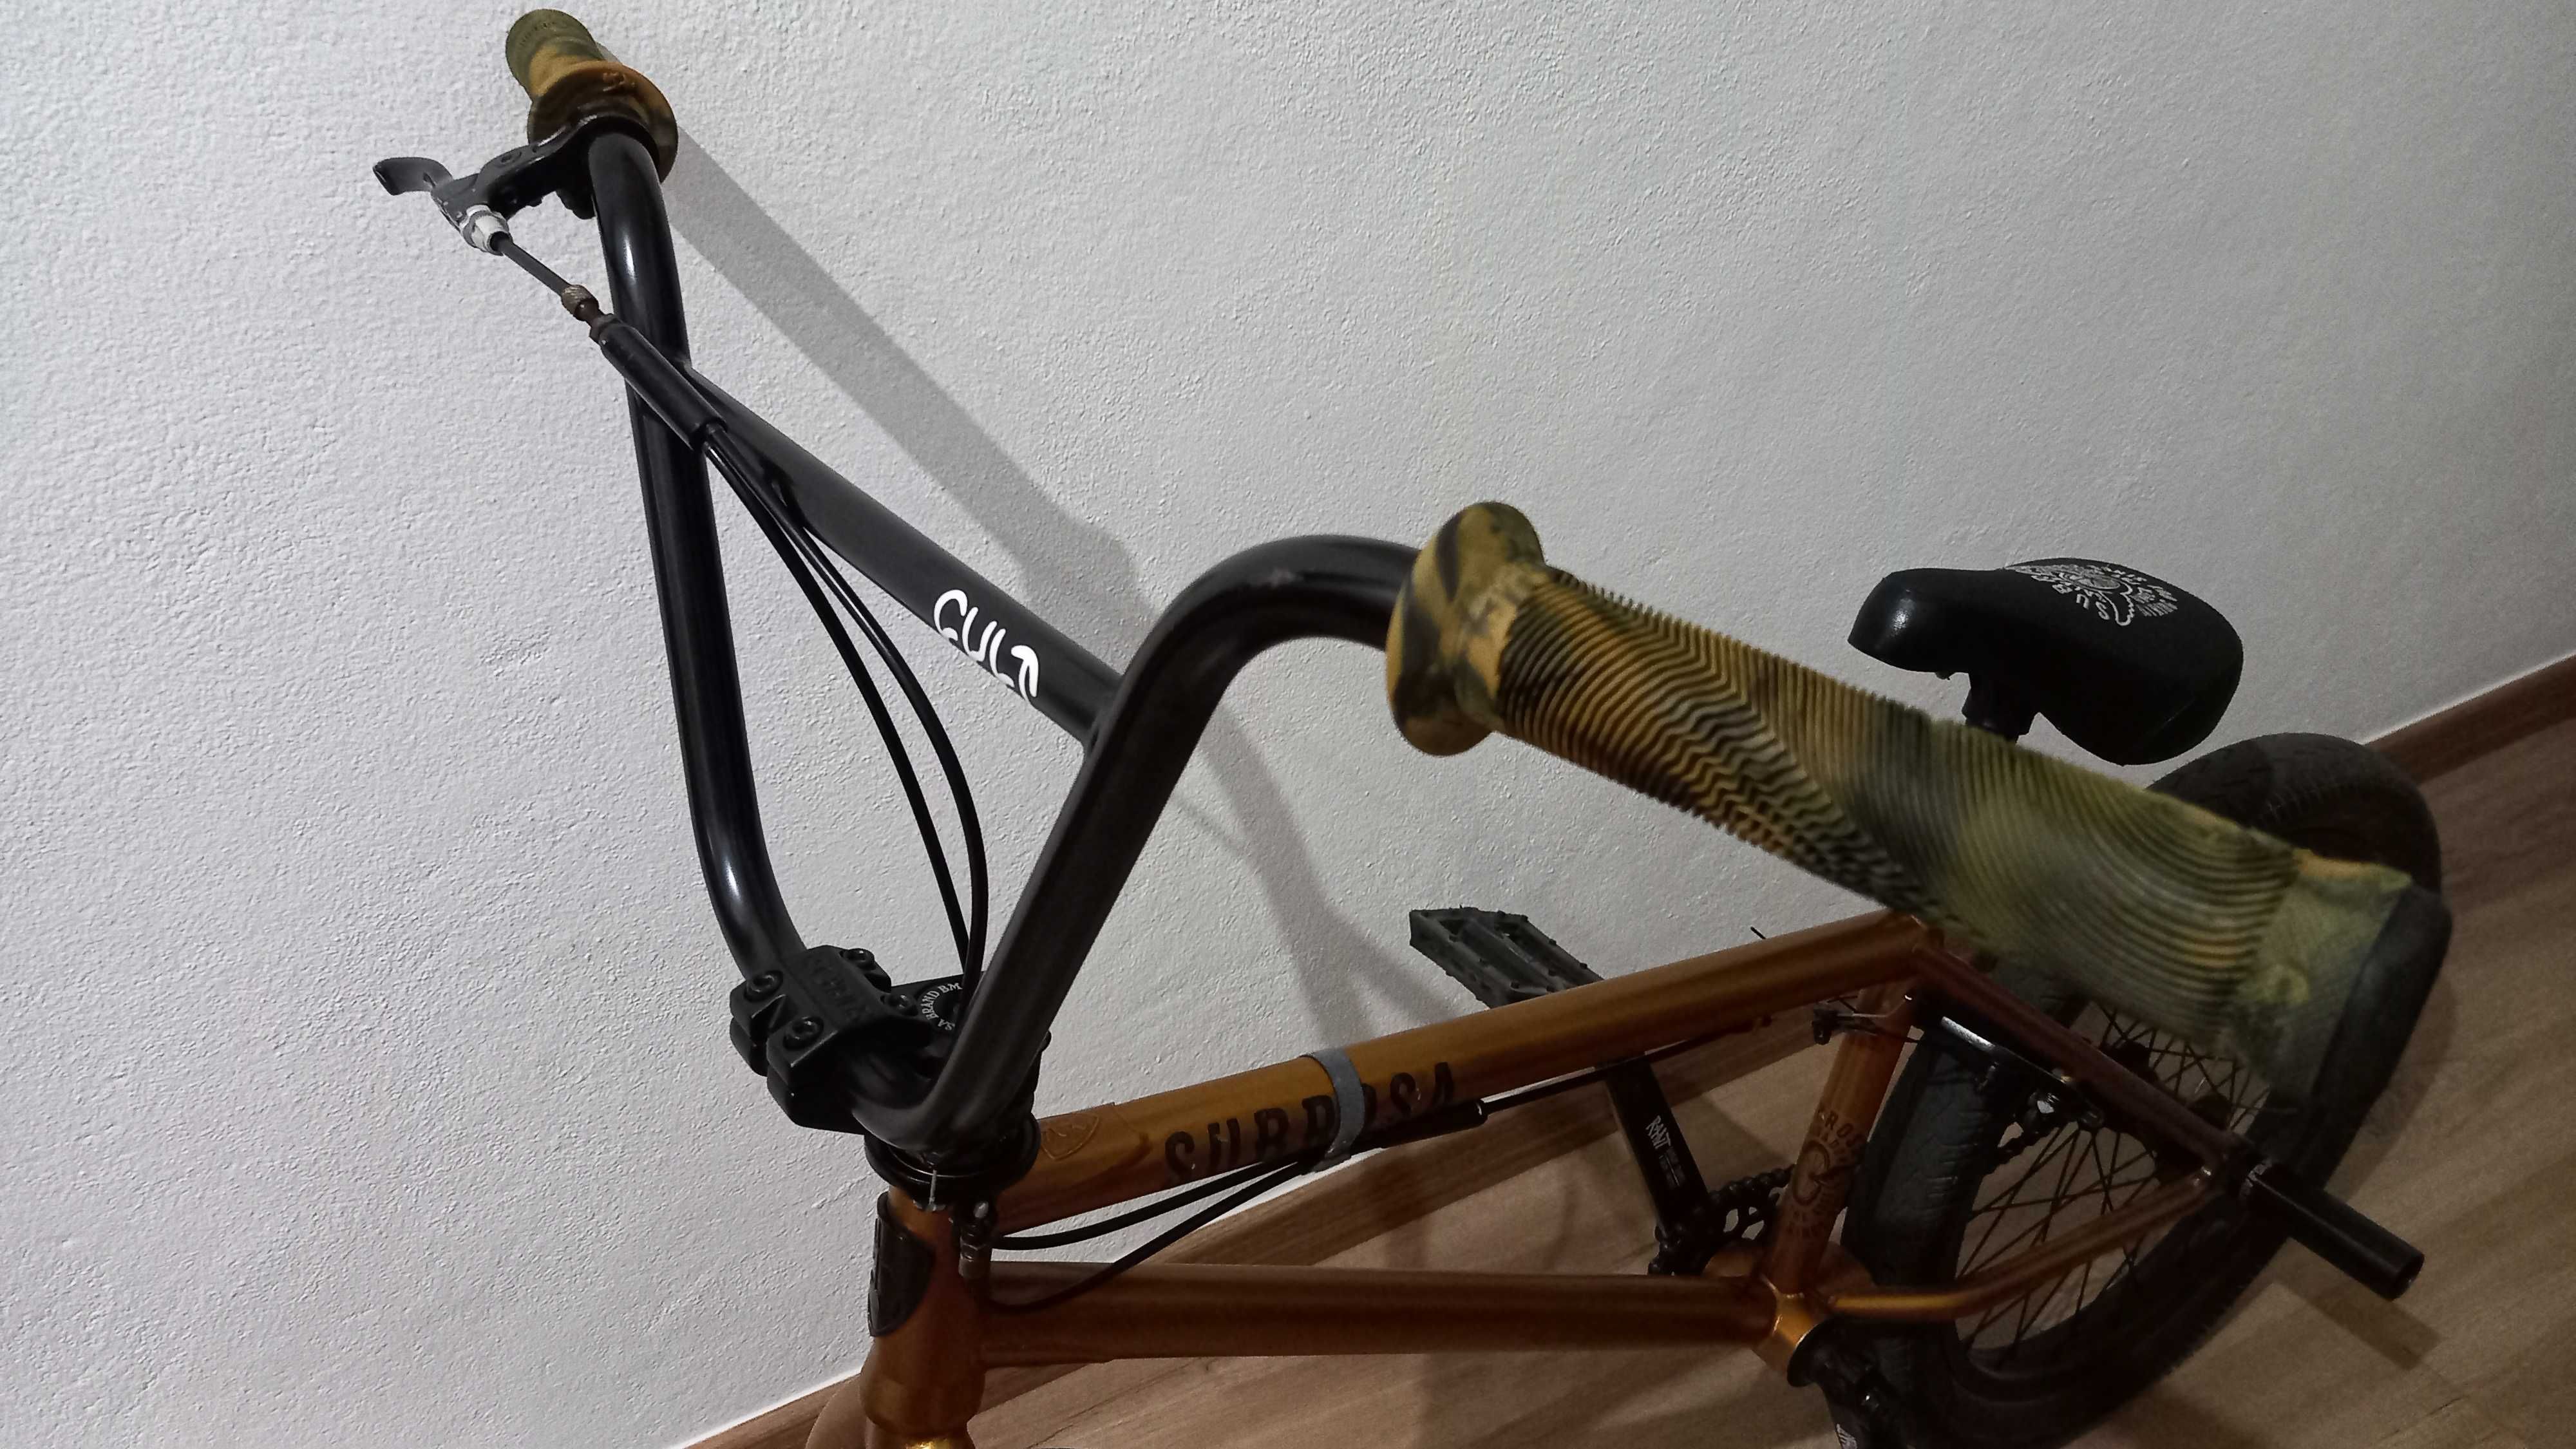 Bicicleta BMX Subrosa Salvador.